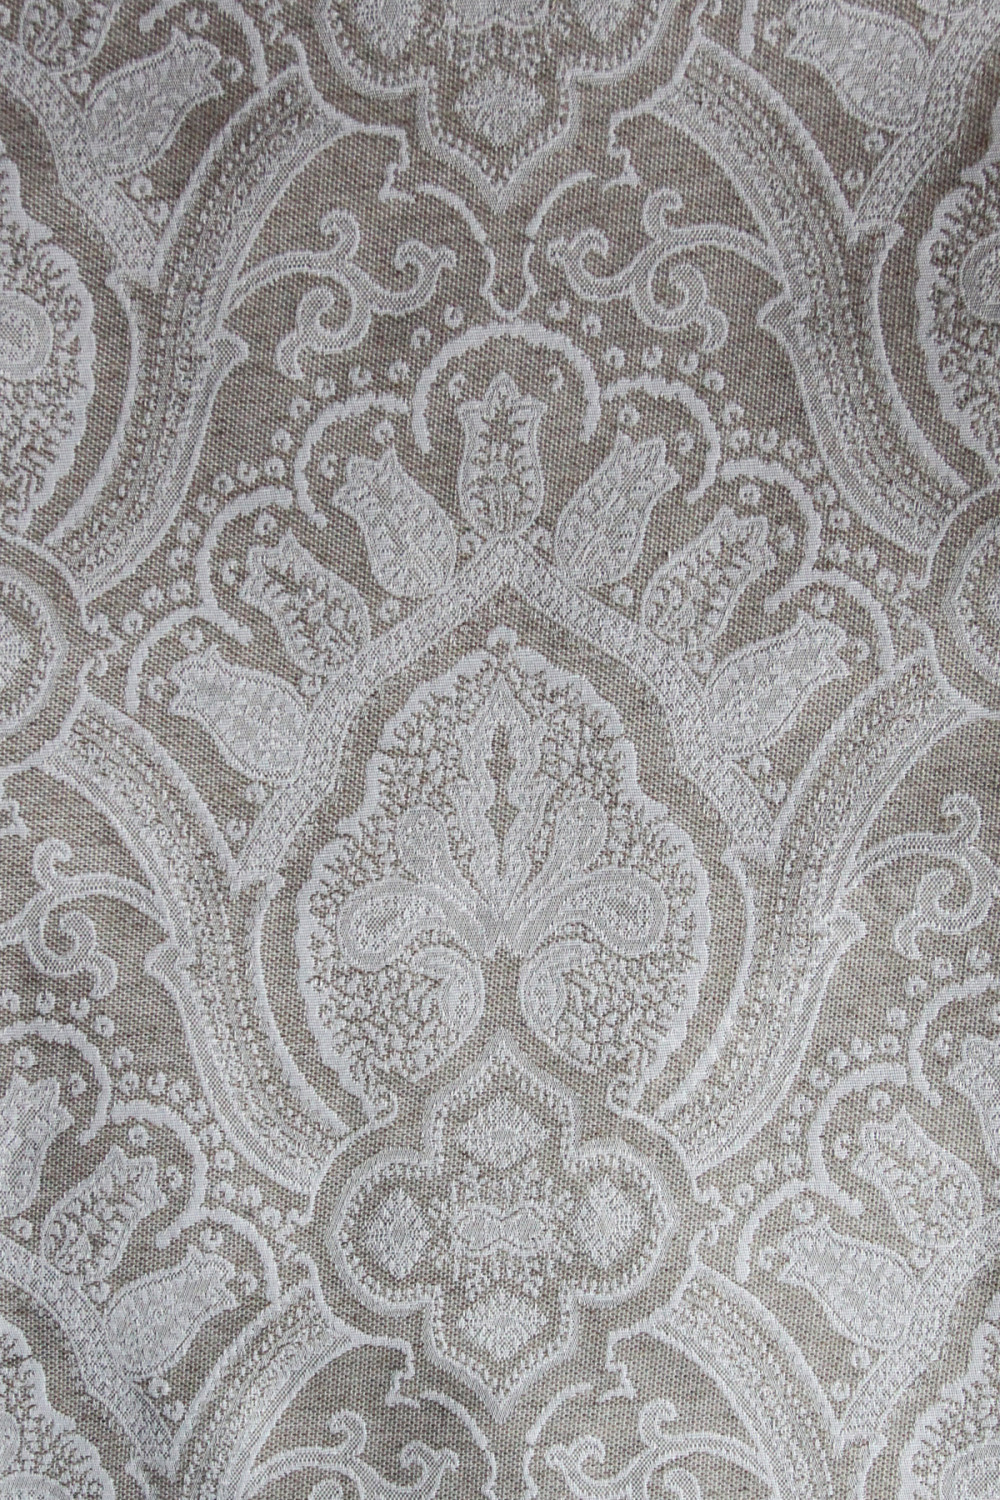 Портьерная ткань жаккард  TRIBAL белый растительный орнамент на сером фоне (раппорт 35х35см)